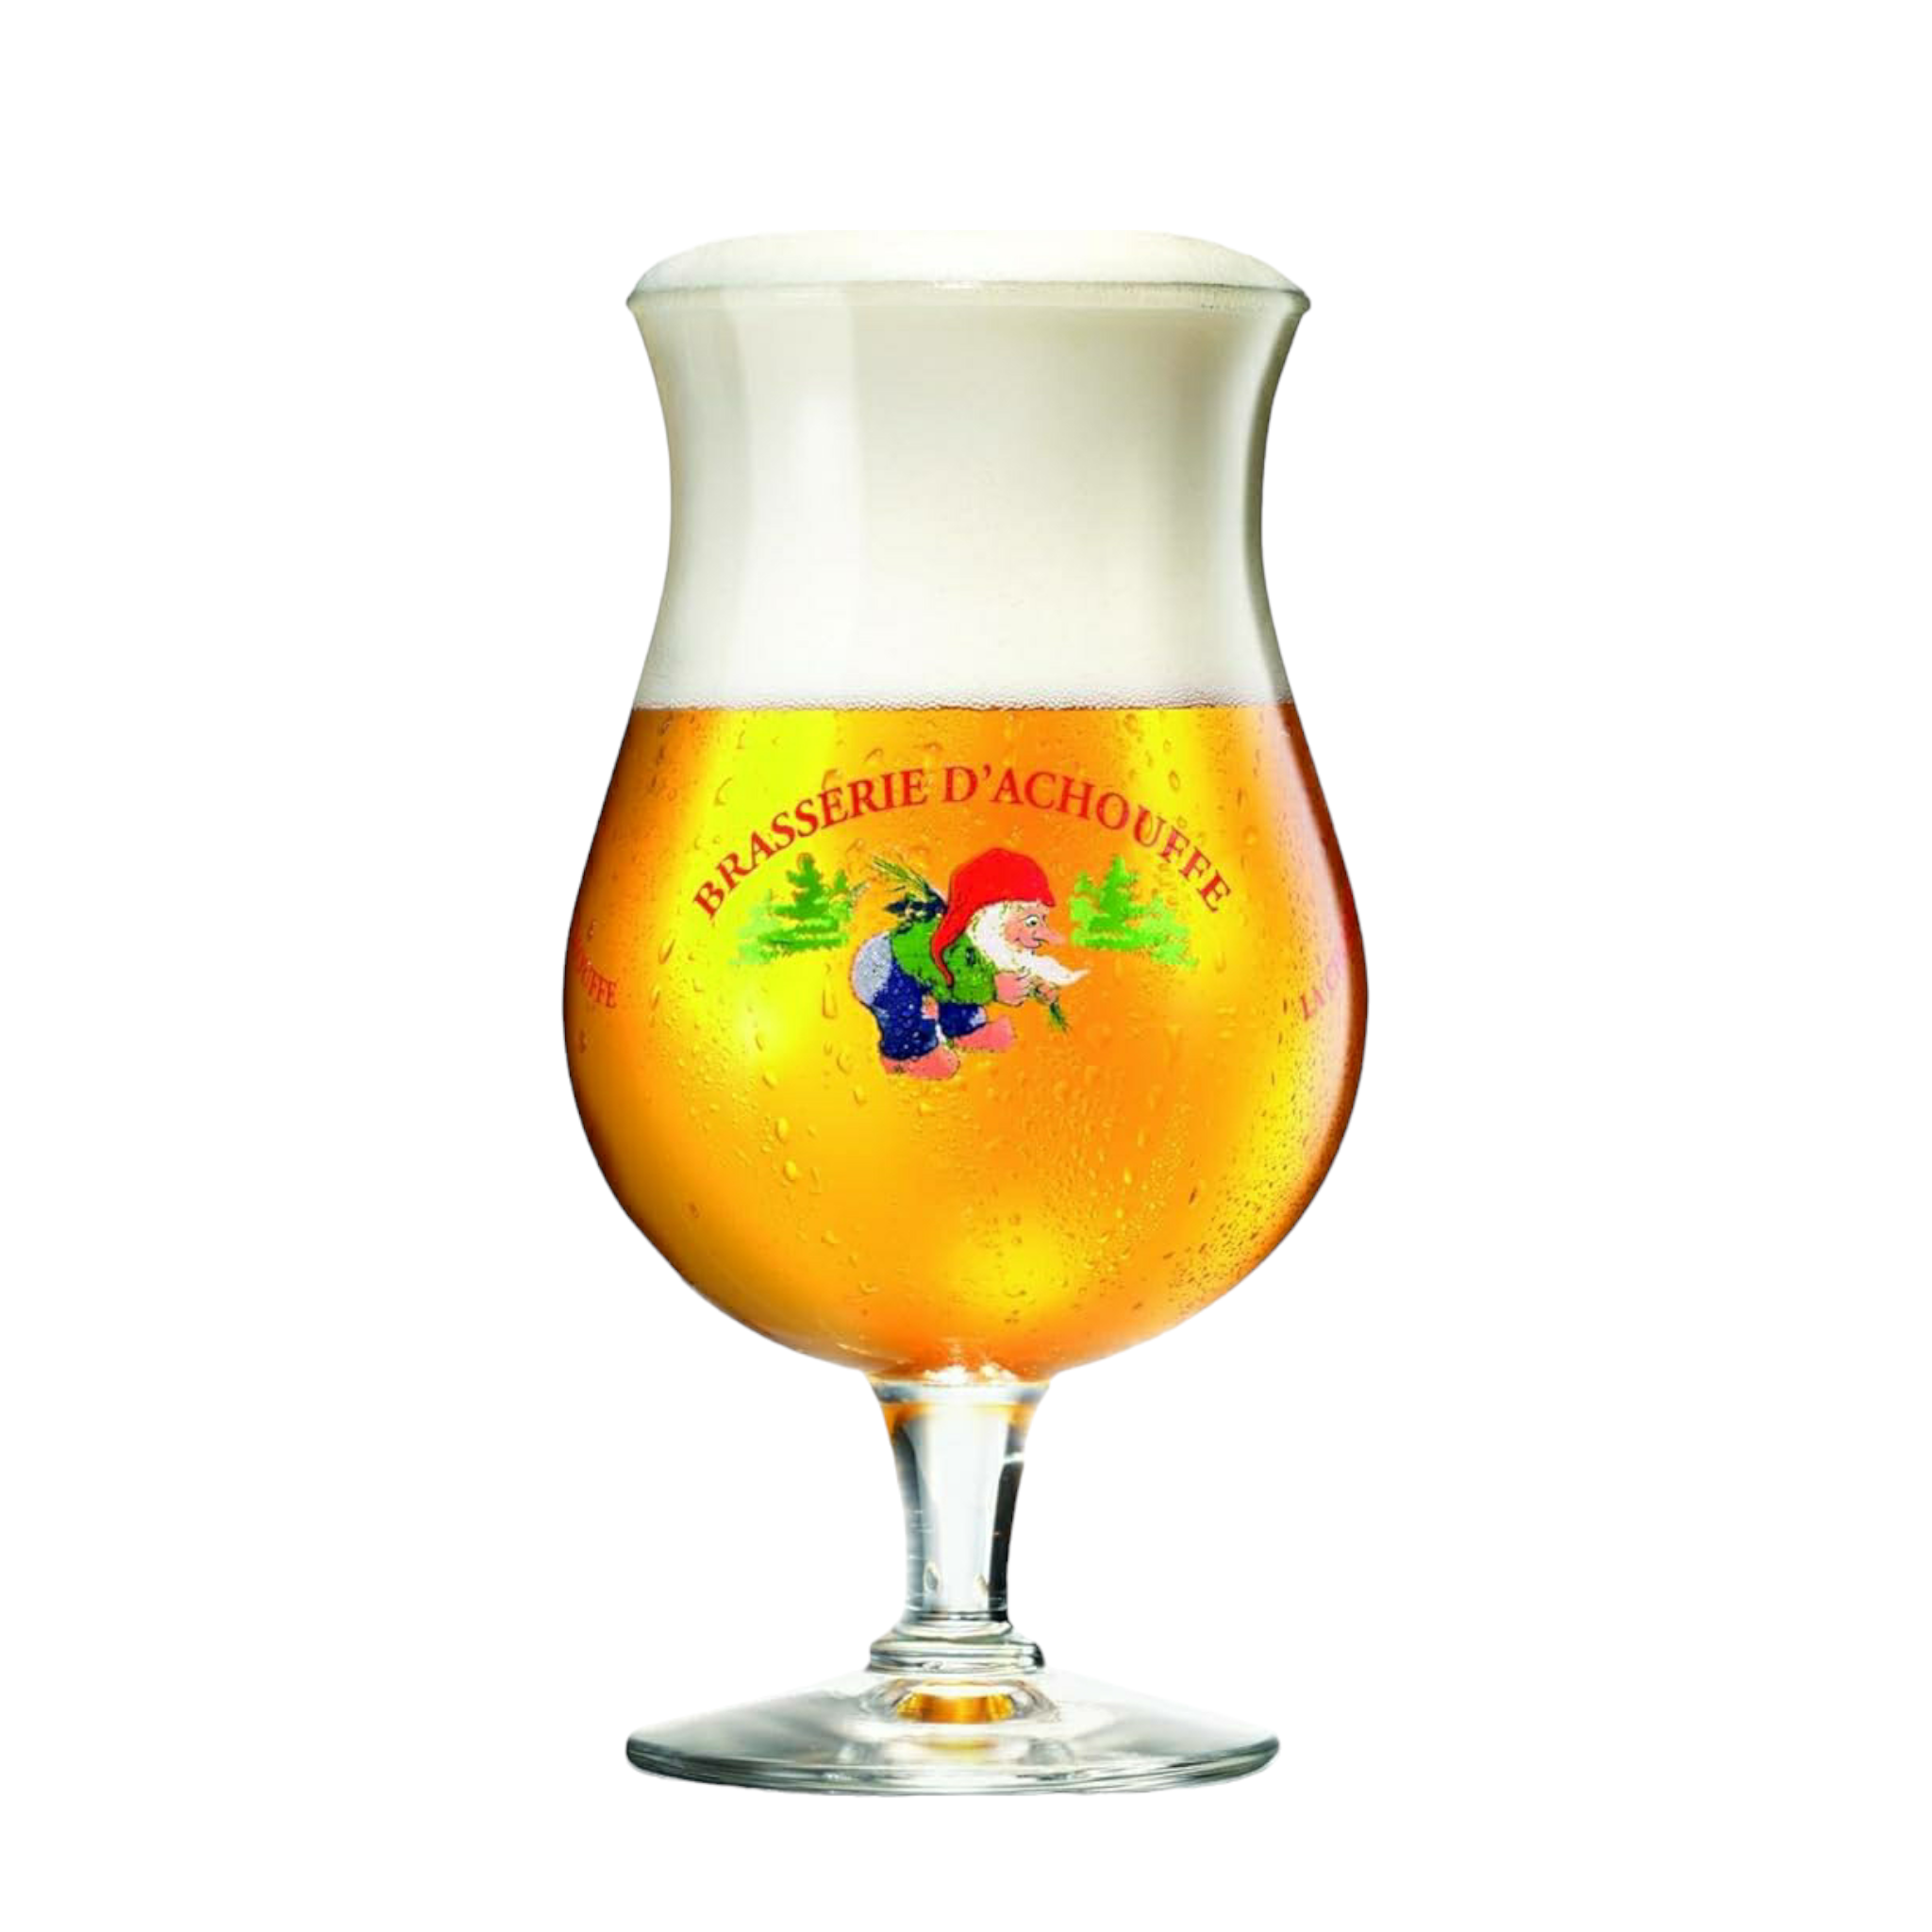 La Chouffe Blonde Bundle - ungefiltertes blondes Bier aus Belgien mit 8%Vol. - mit Glas und Bierdeckel  - Geschenkset